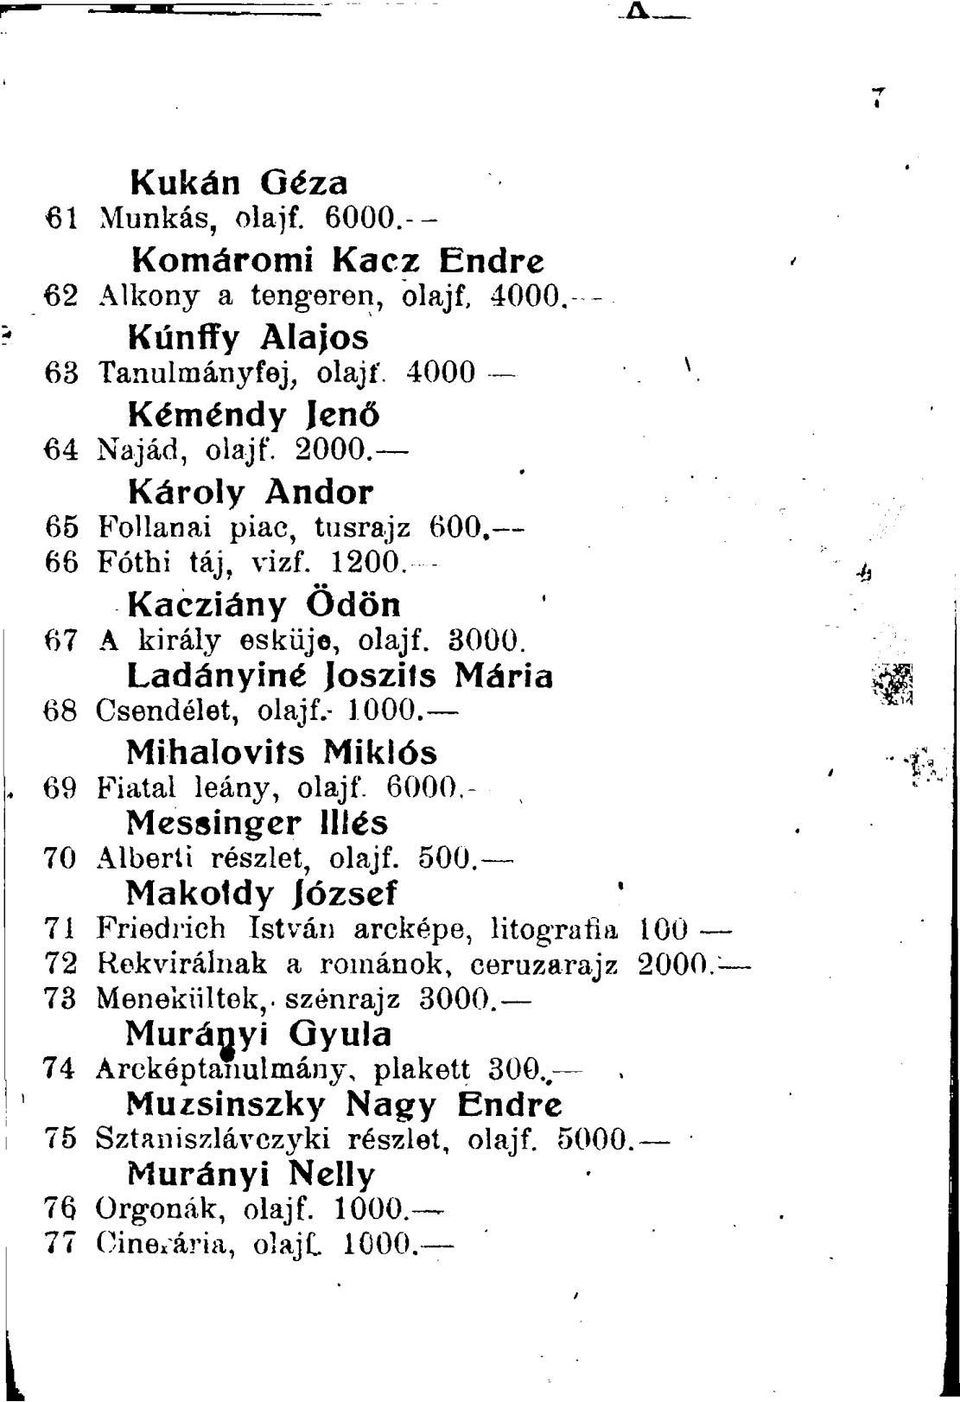 Mihalovifs Miklós 69 Fiatal leány, olajf. 6000.- Messinger Illés 70 Alberti részlet, olajf. 500.